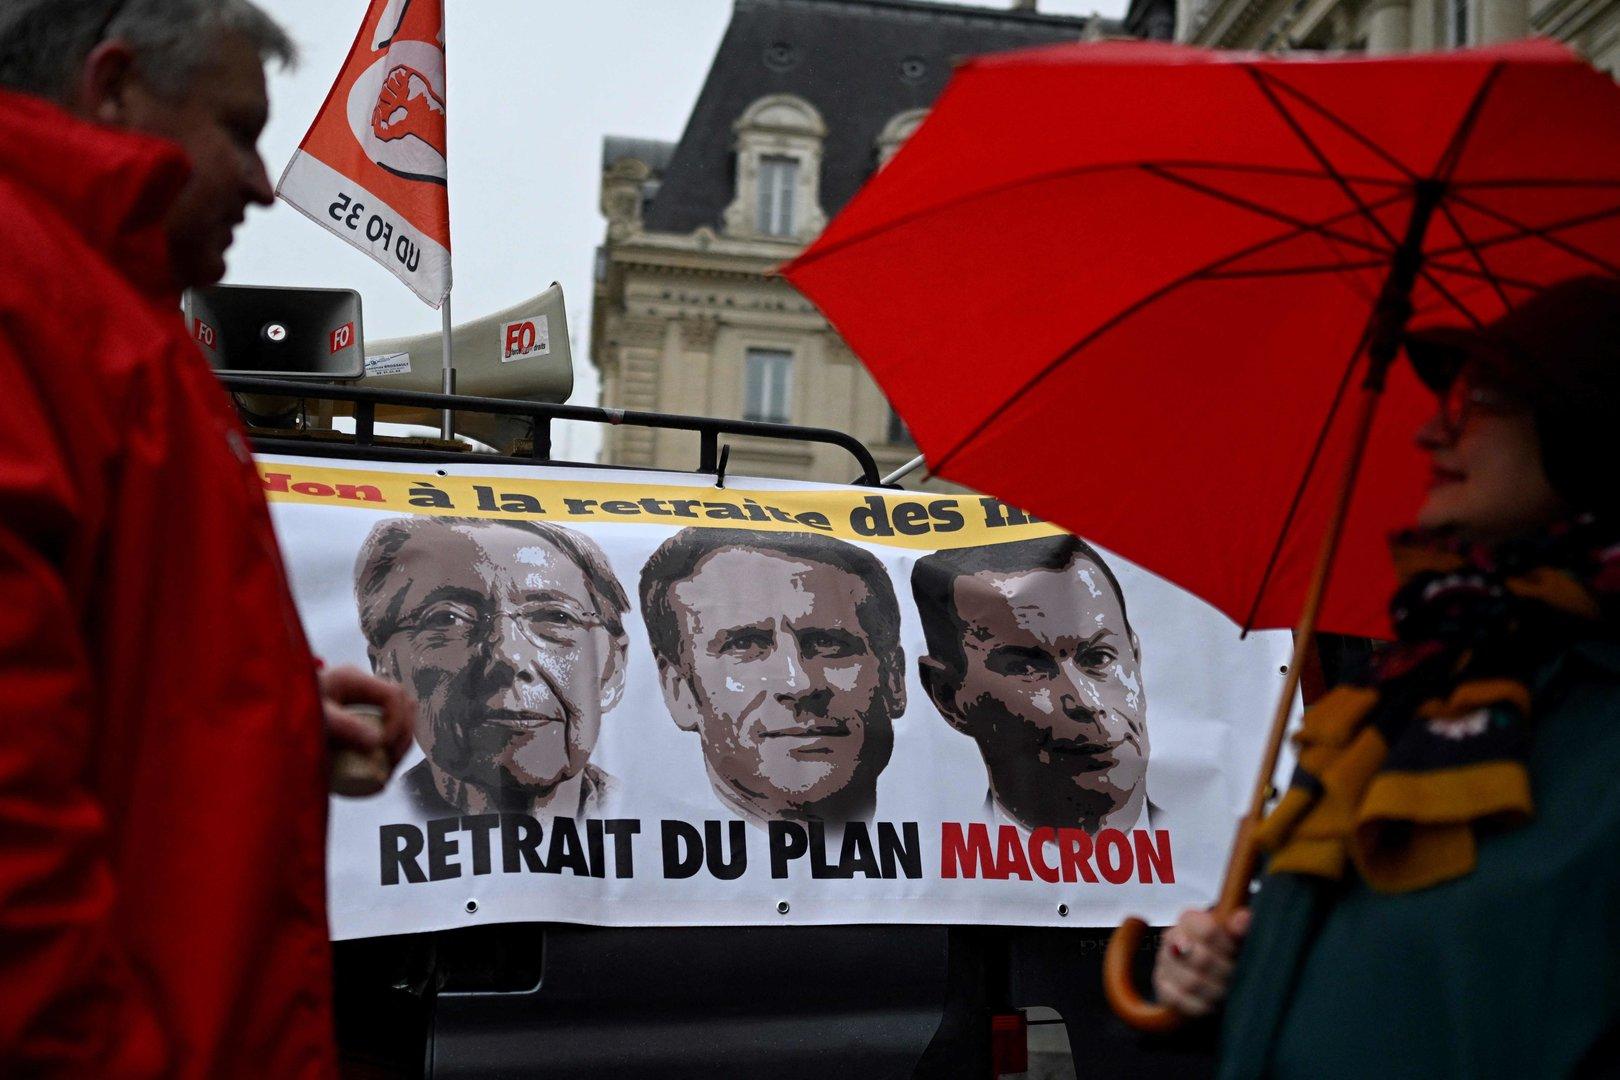 Pension ab 64 statt 62 Jahren: Streikwelle in Frankreich geplant